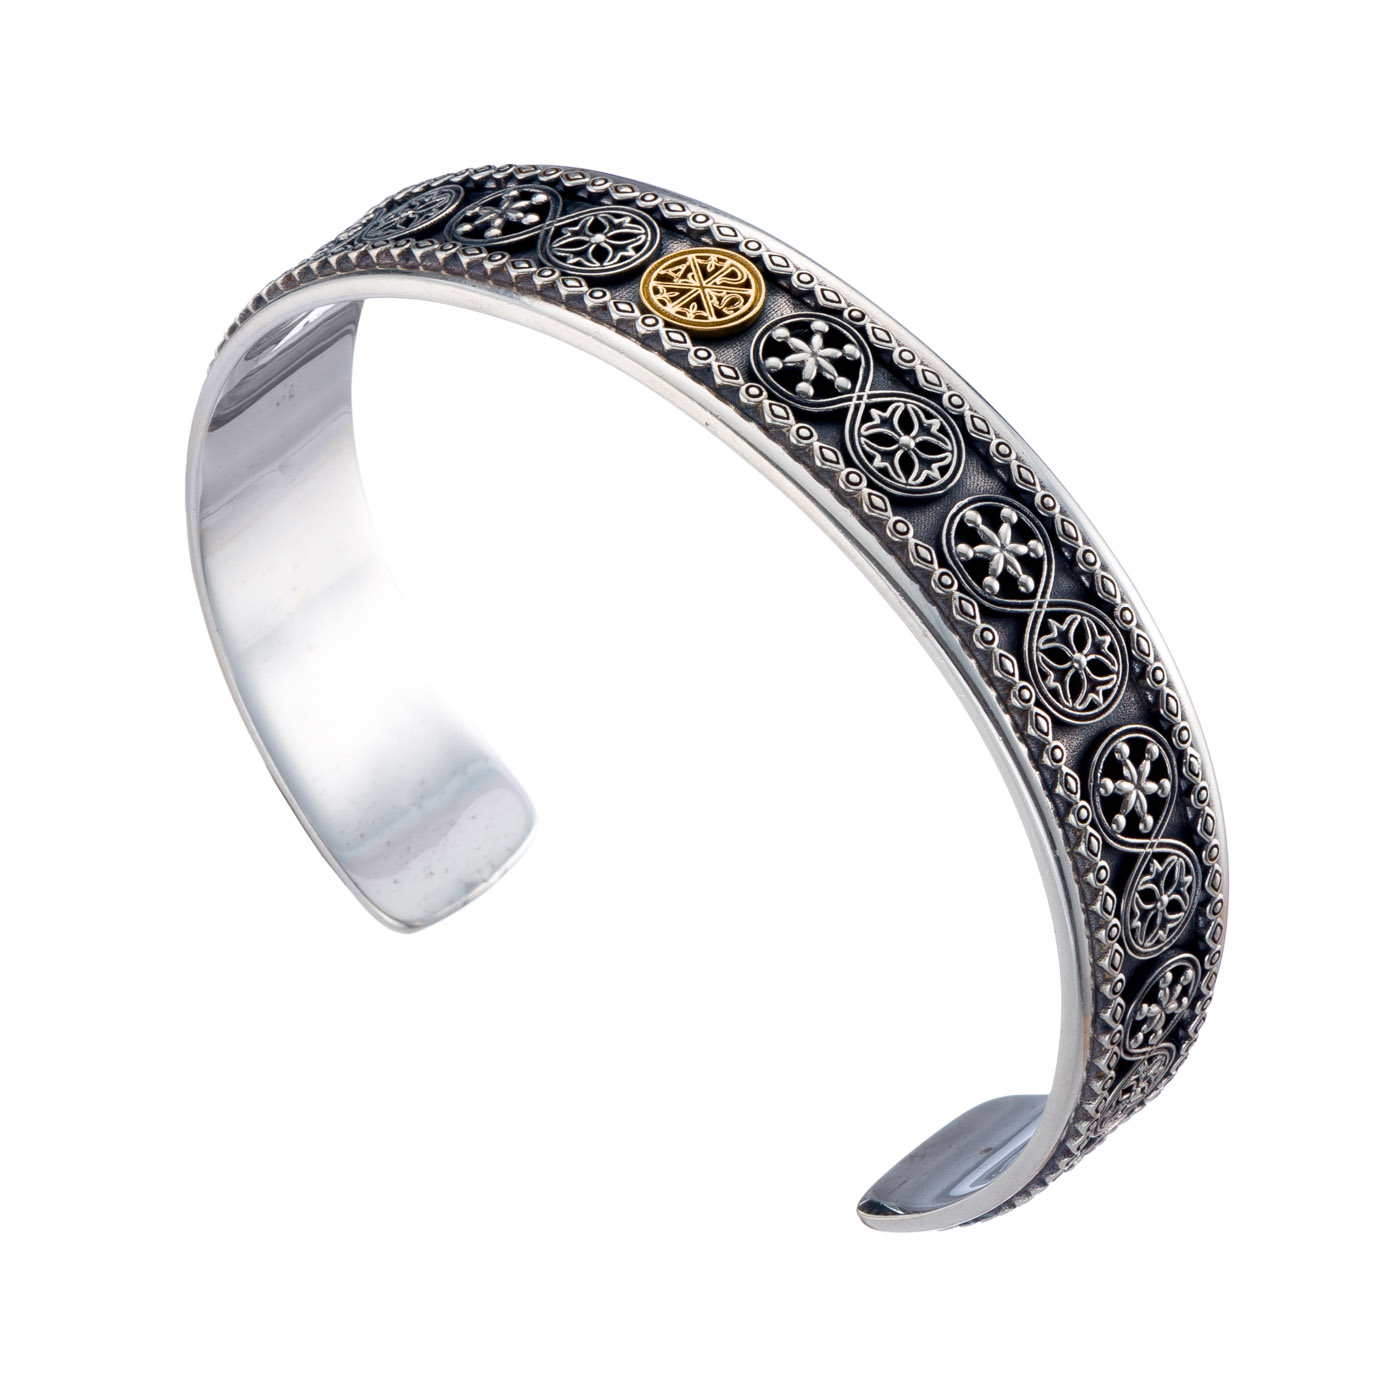 Byzantine symbol ΑΡΧΩ Bracelet in Sterling silver with 18K Gold details